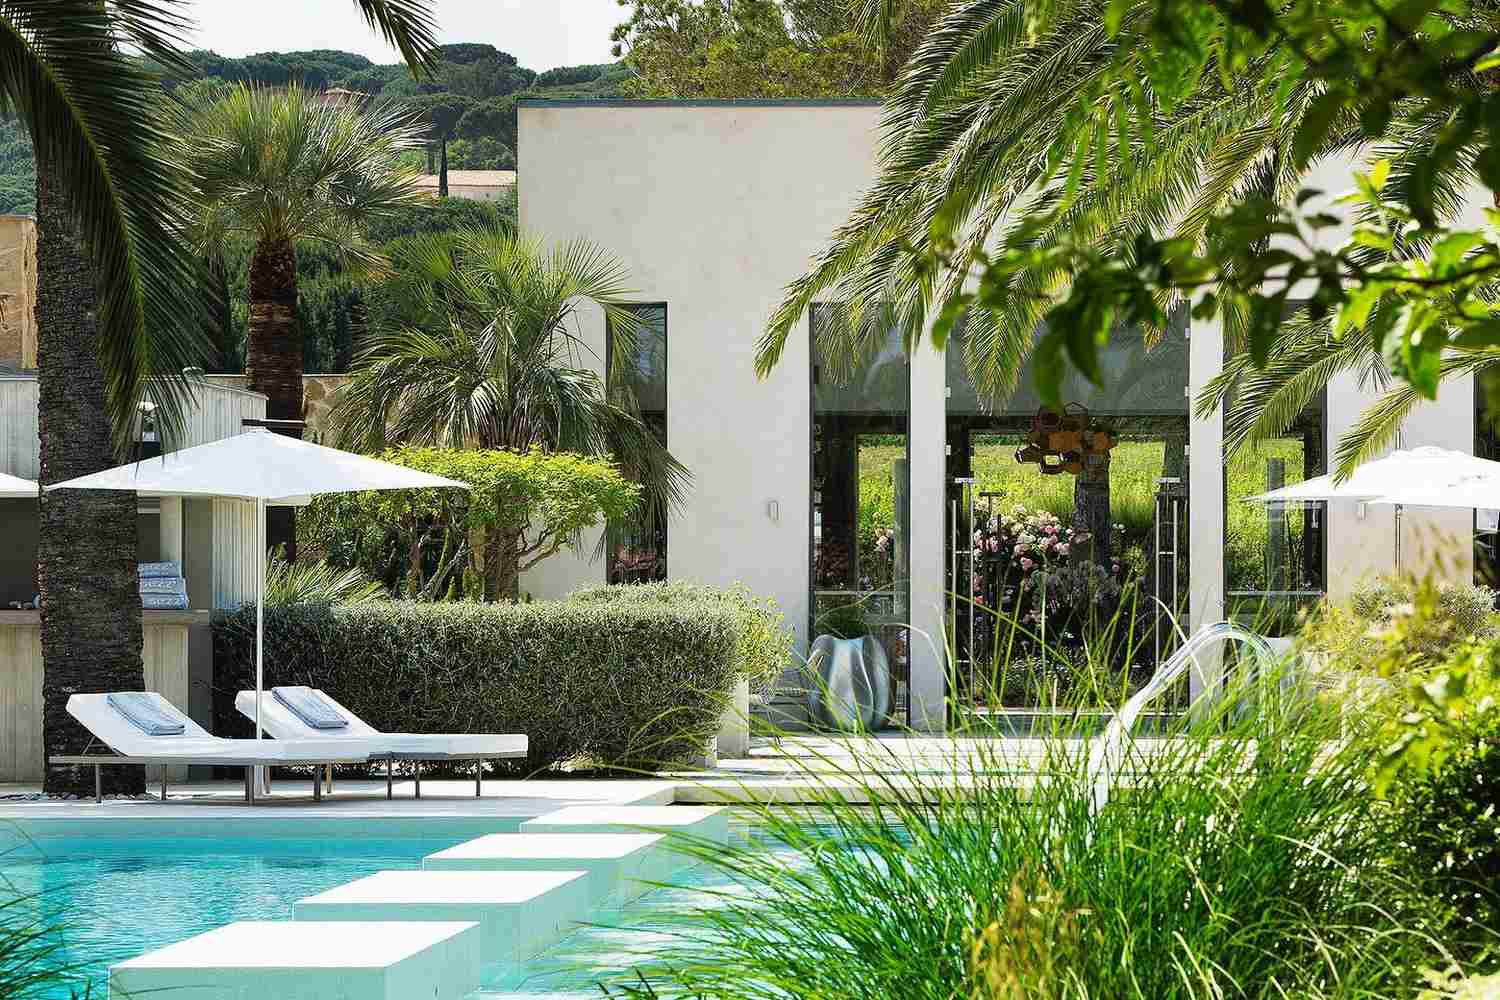 Hotel Sezz Saint Tropez, Cote d'Azur - France